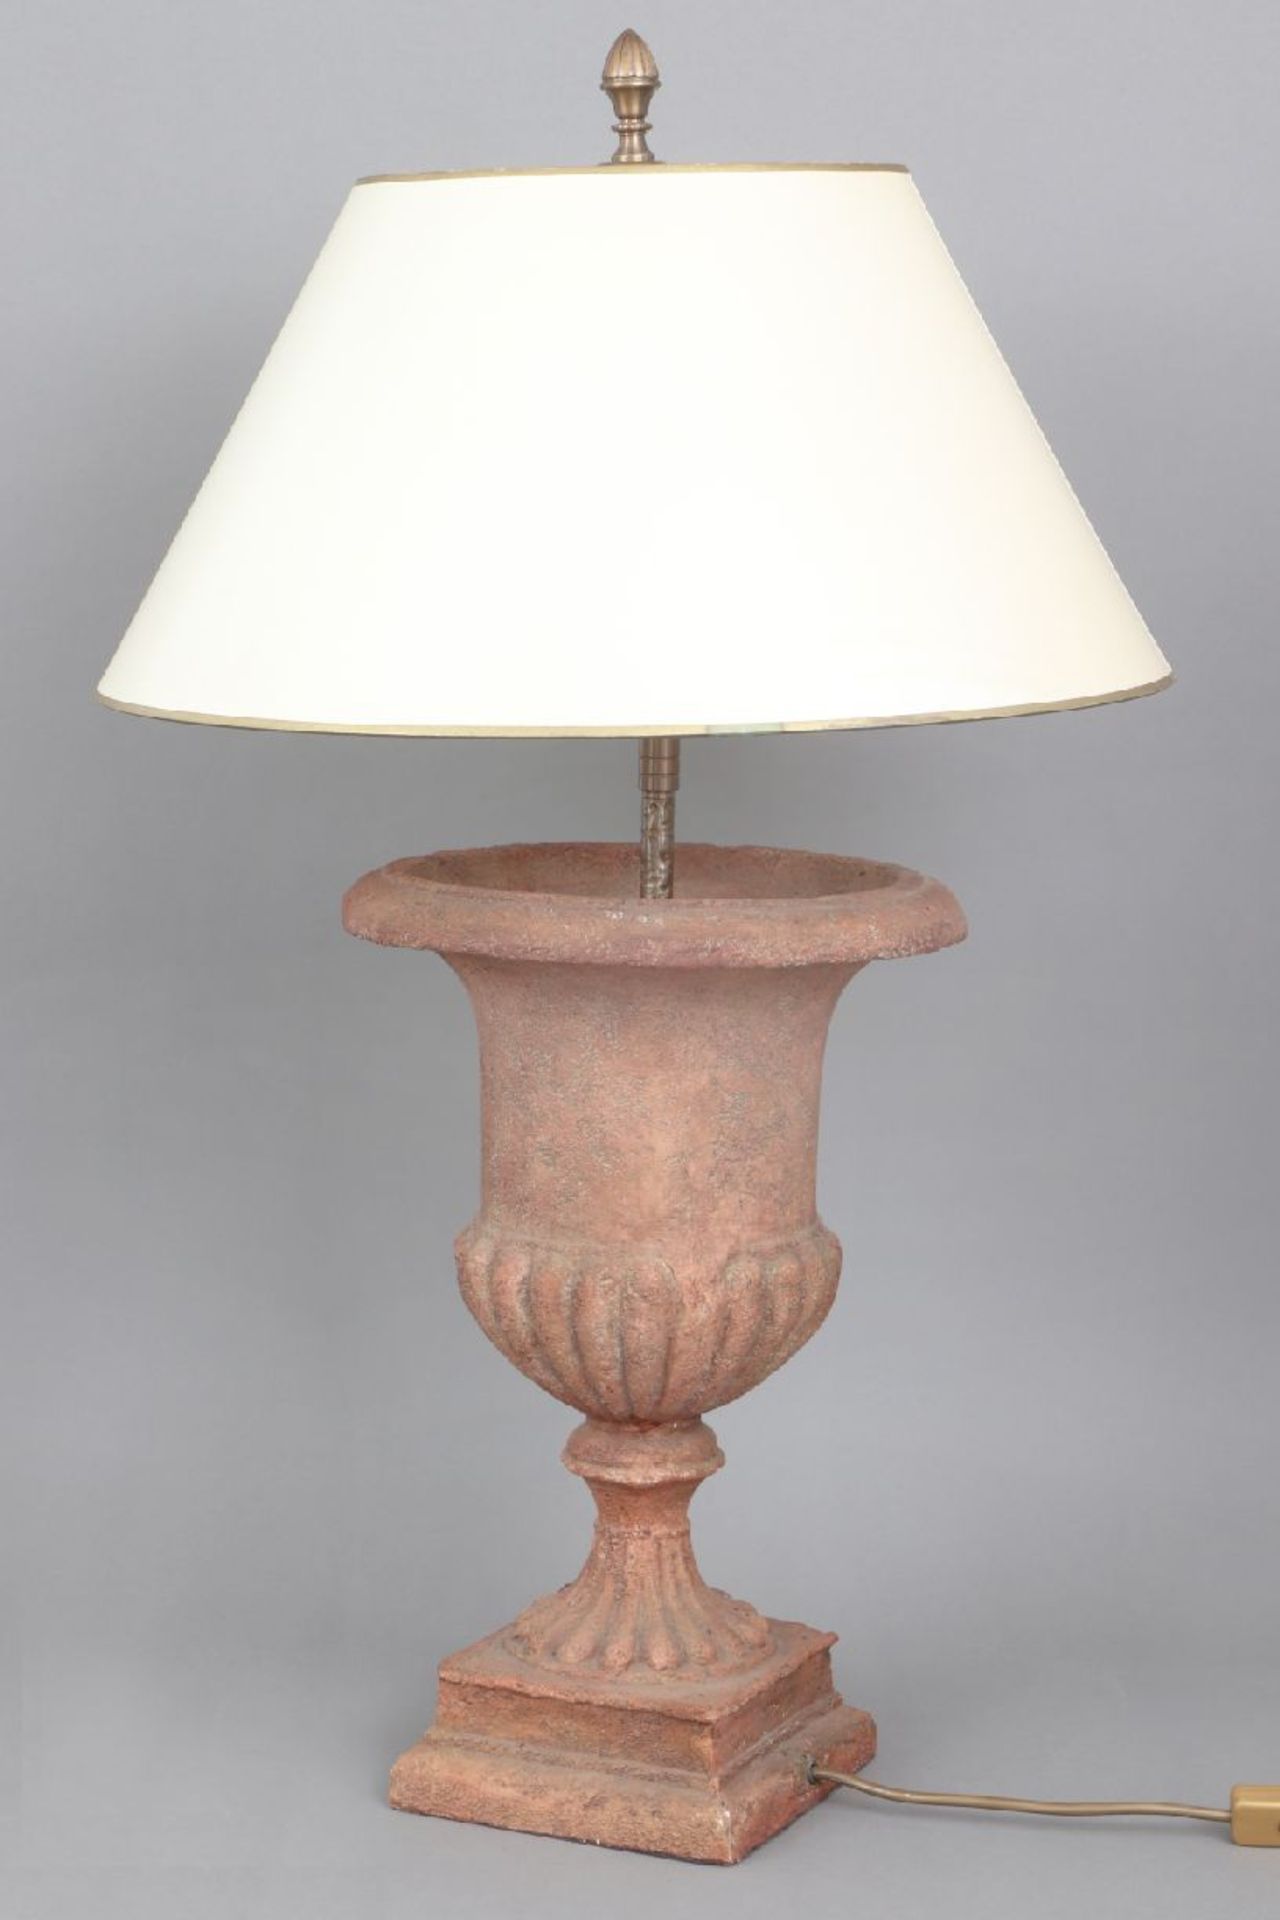 Tischlampe mit AmphorenfußMasseguß, terrakottafarben patiniert, heller, konischer Pappschirm, 1-